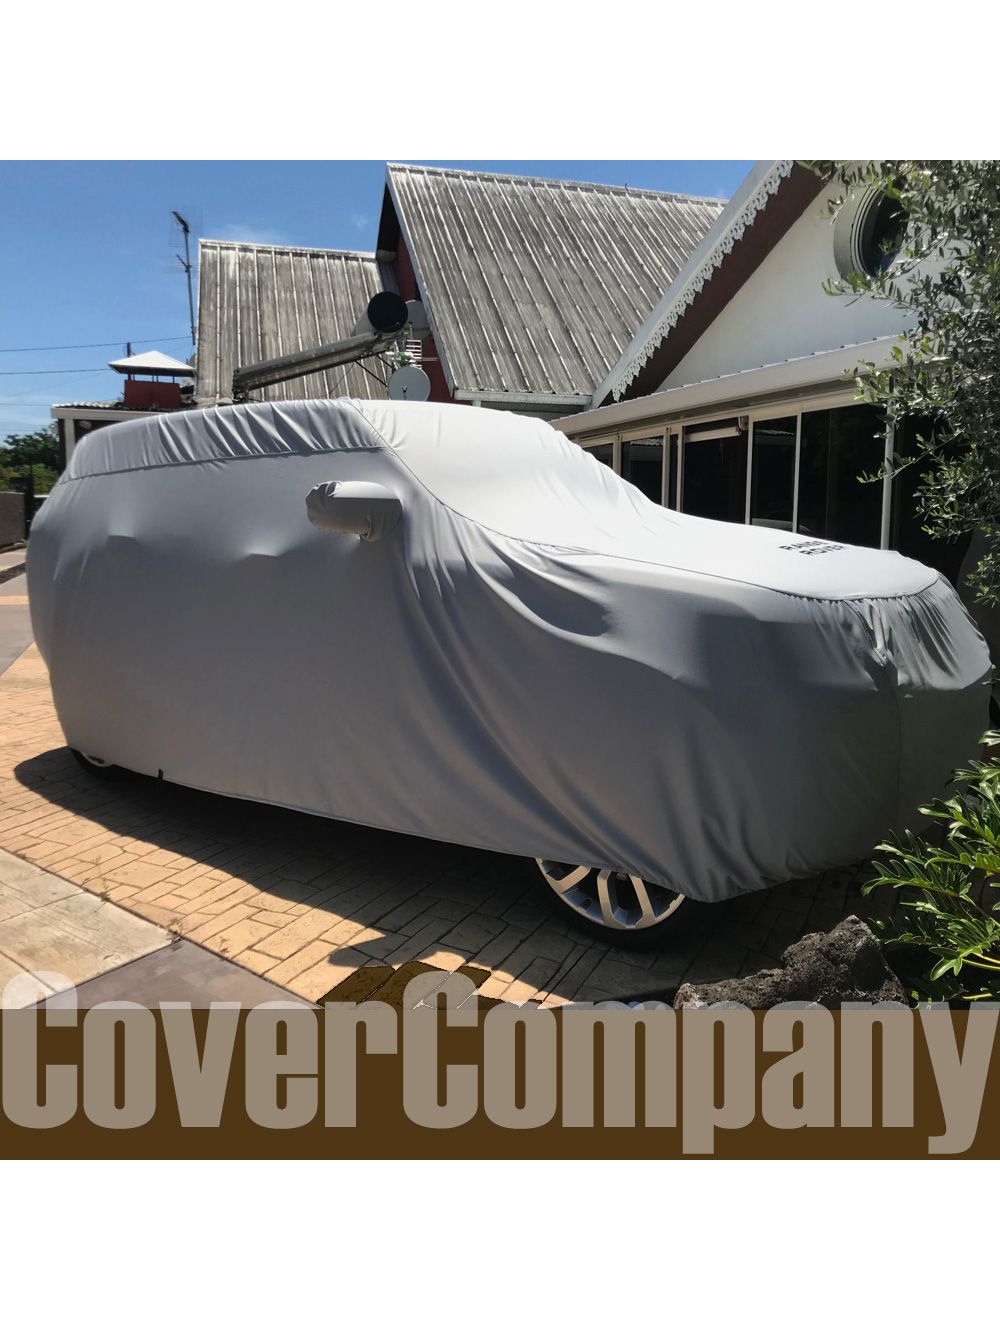 Bache sur Mesure Range Rover - Cover Company France